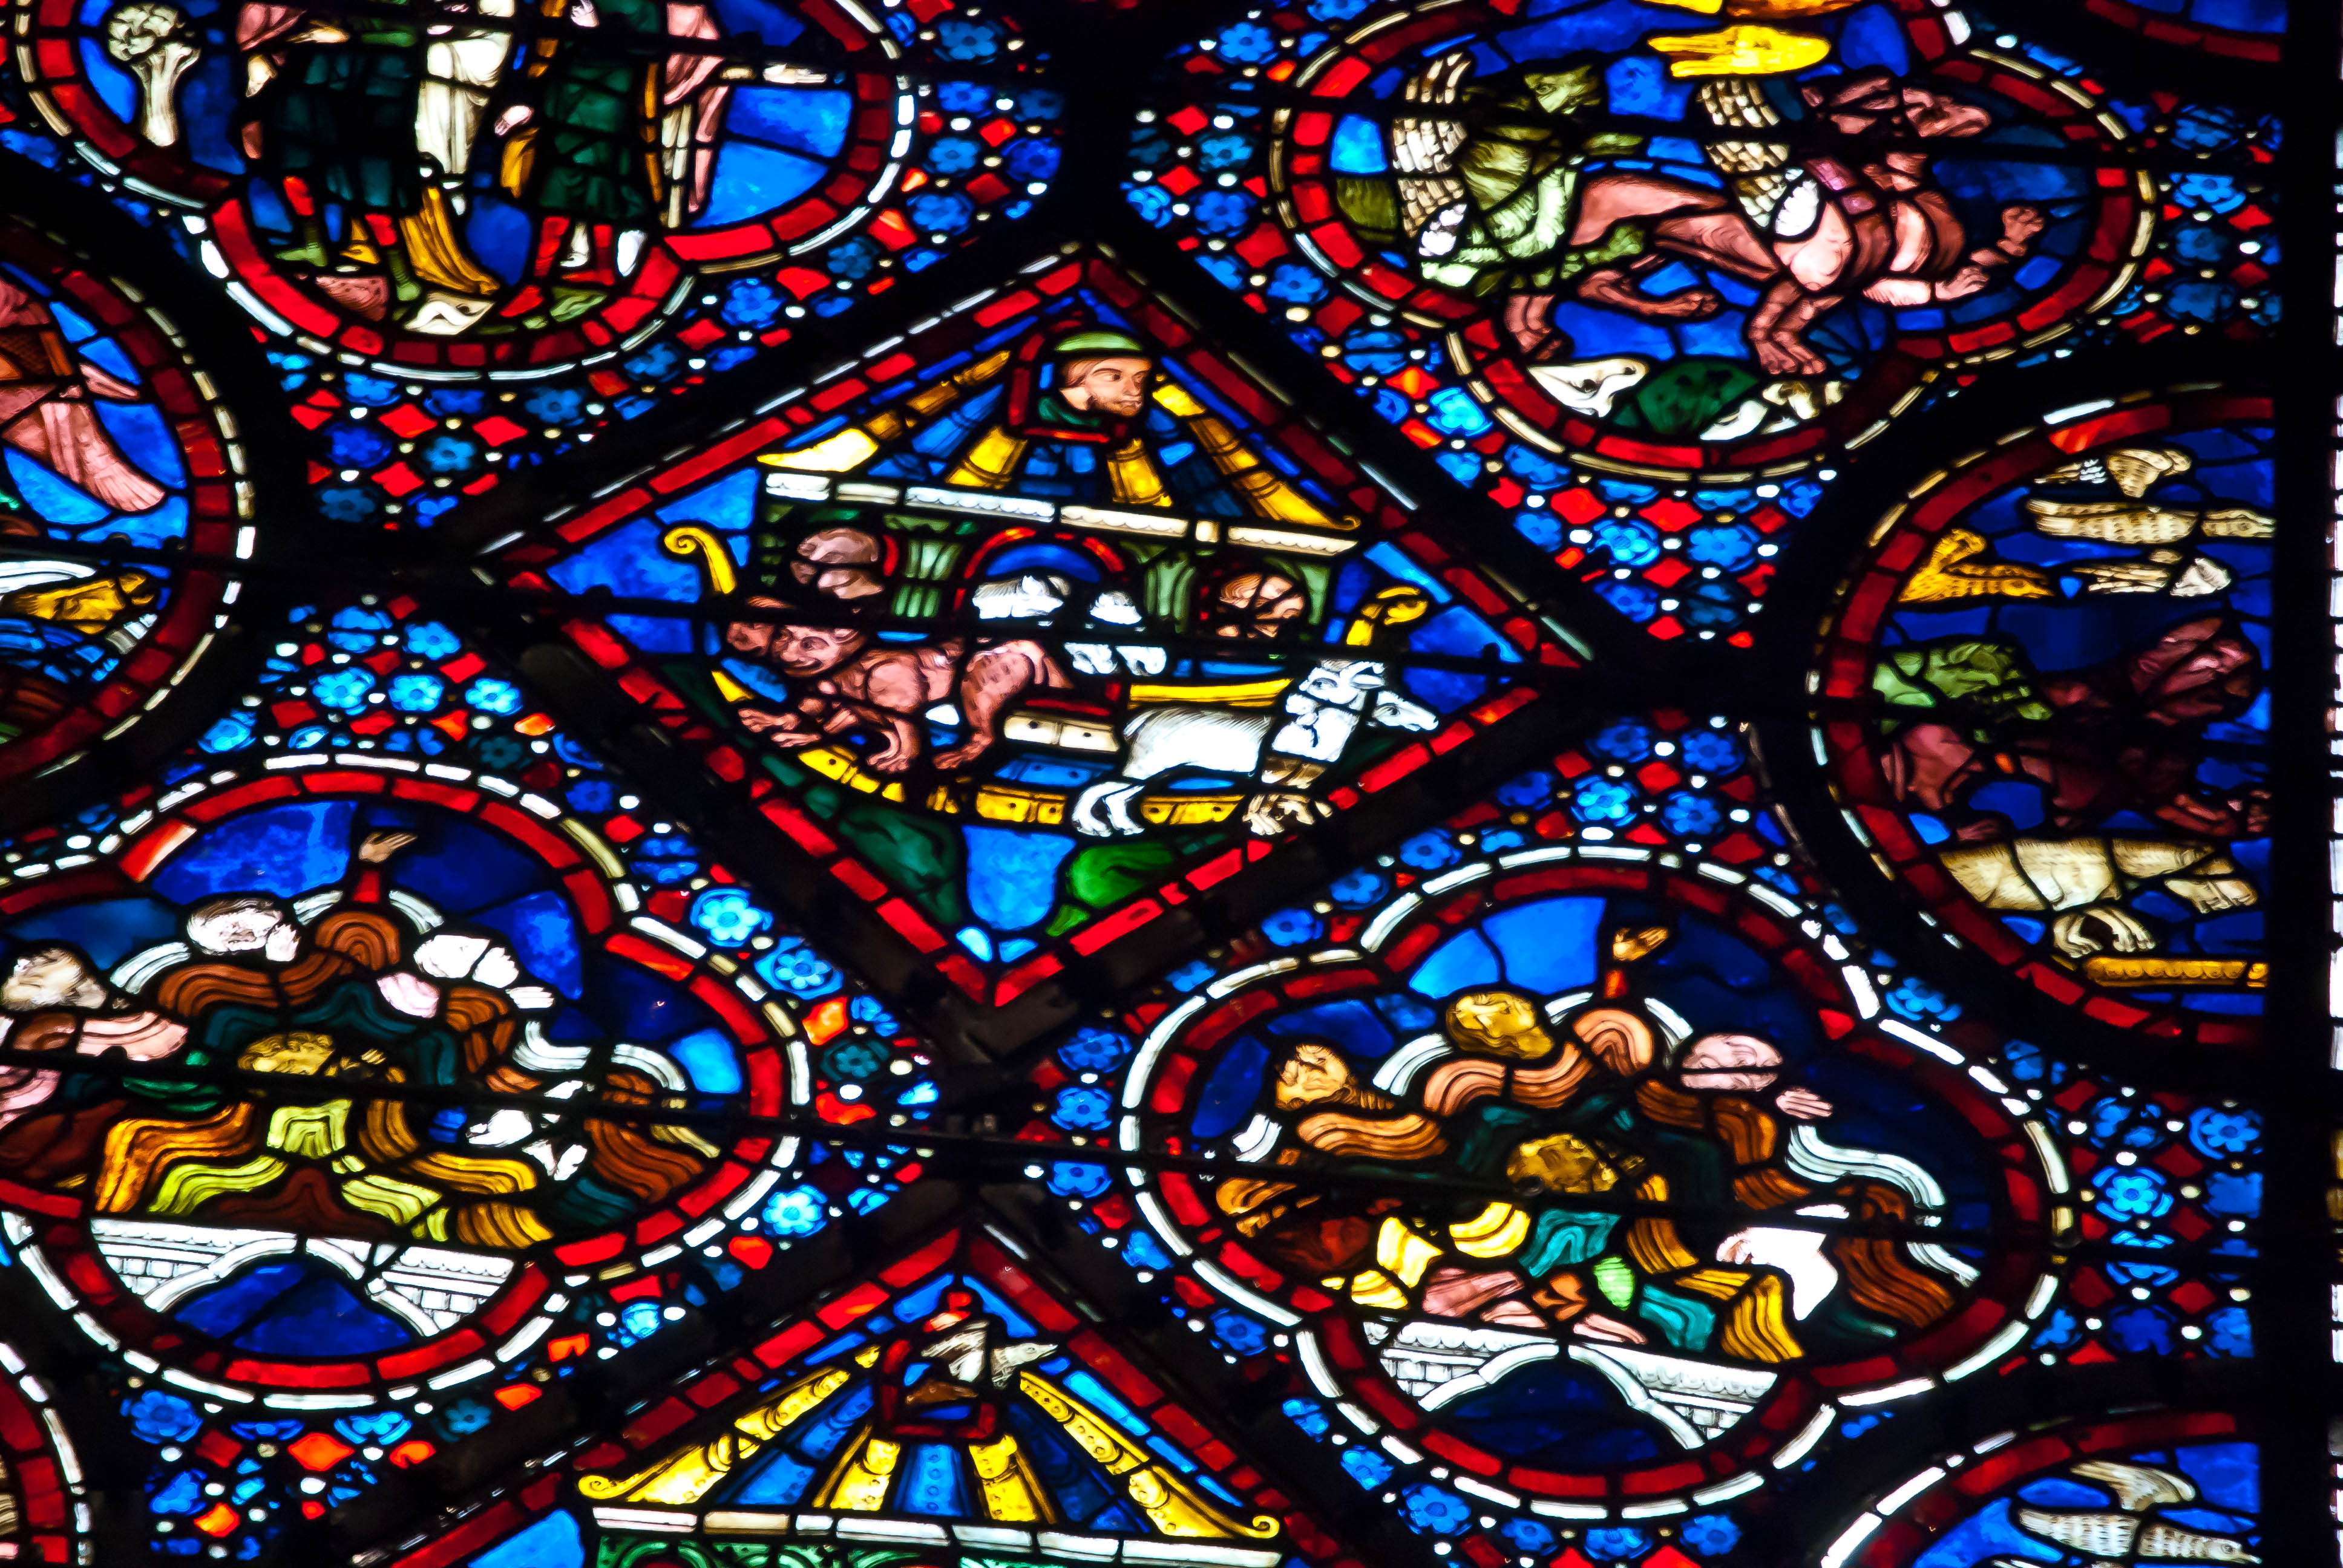 Las vidrieras de la catedral de Chartres - Chartres: Arte, espiritualidad y esoterismo. (7)